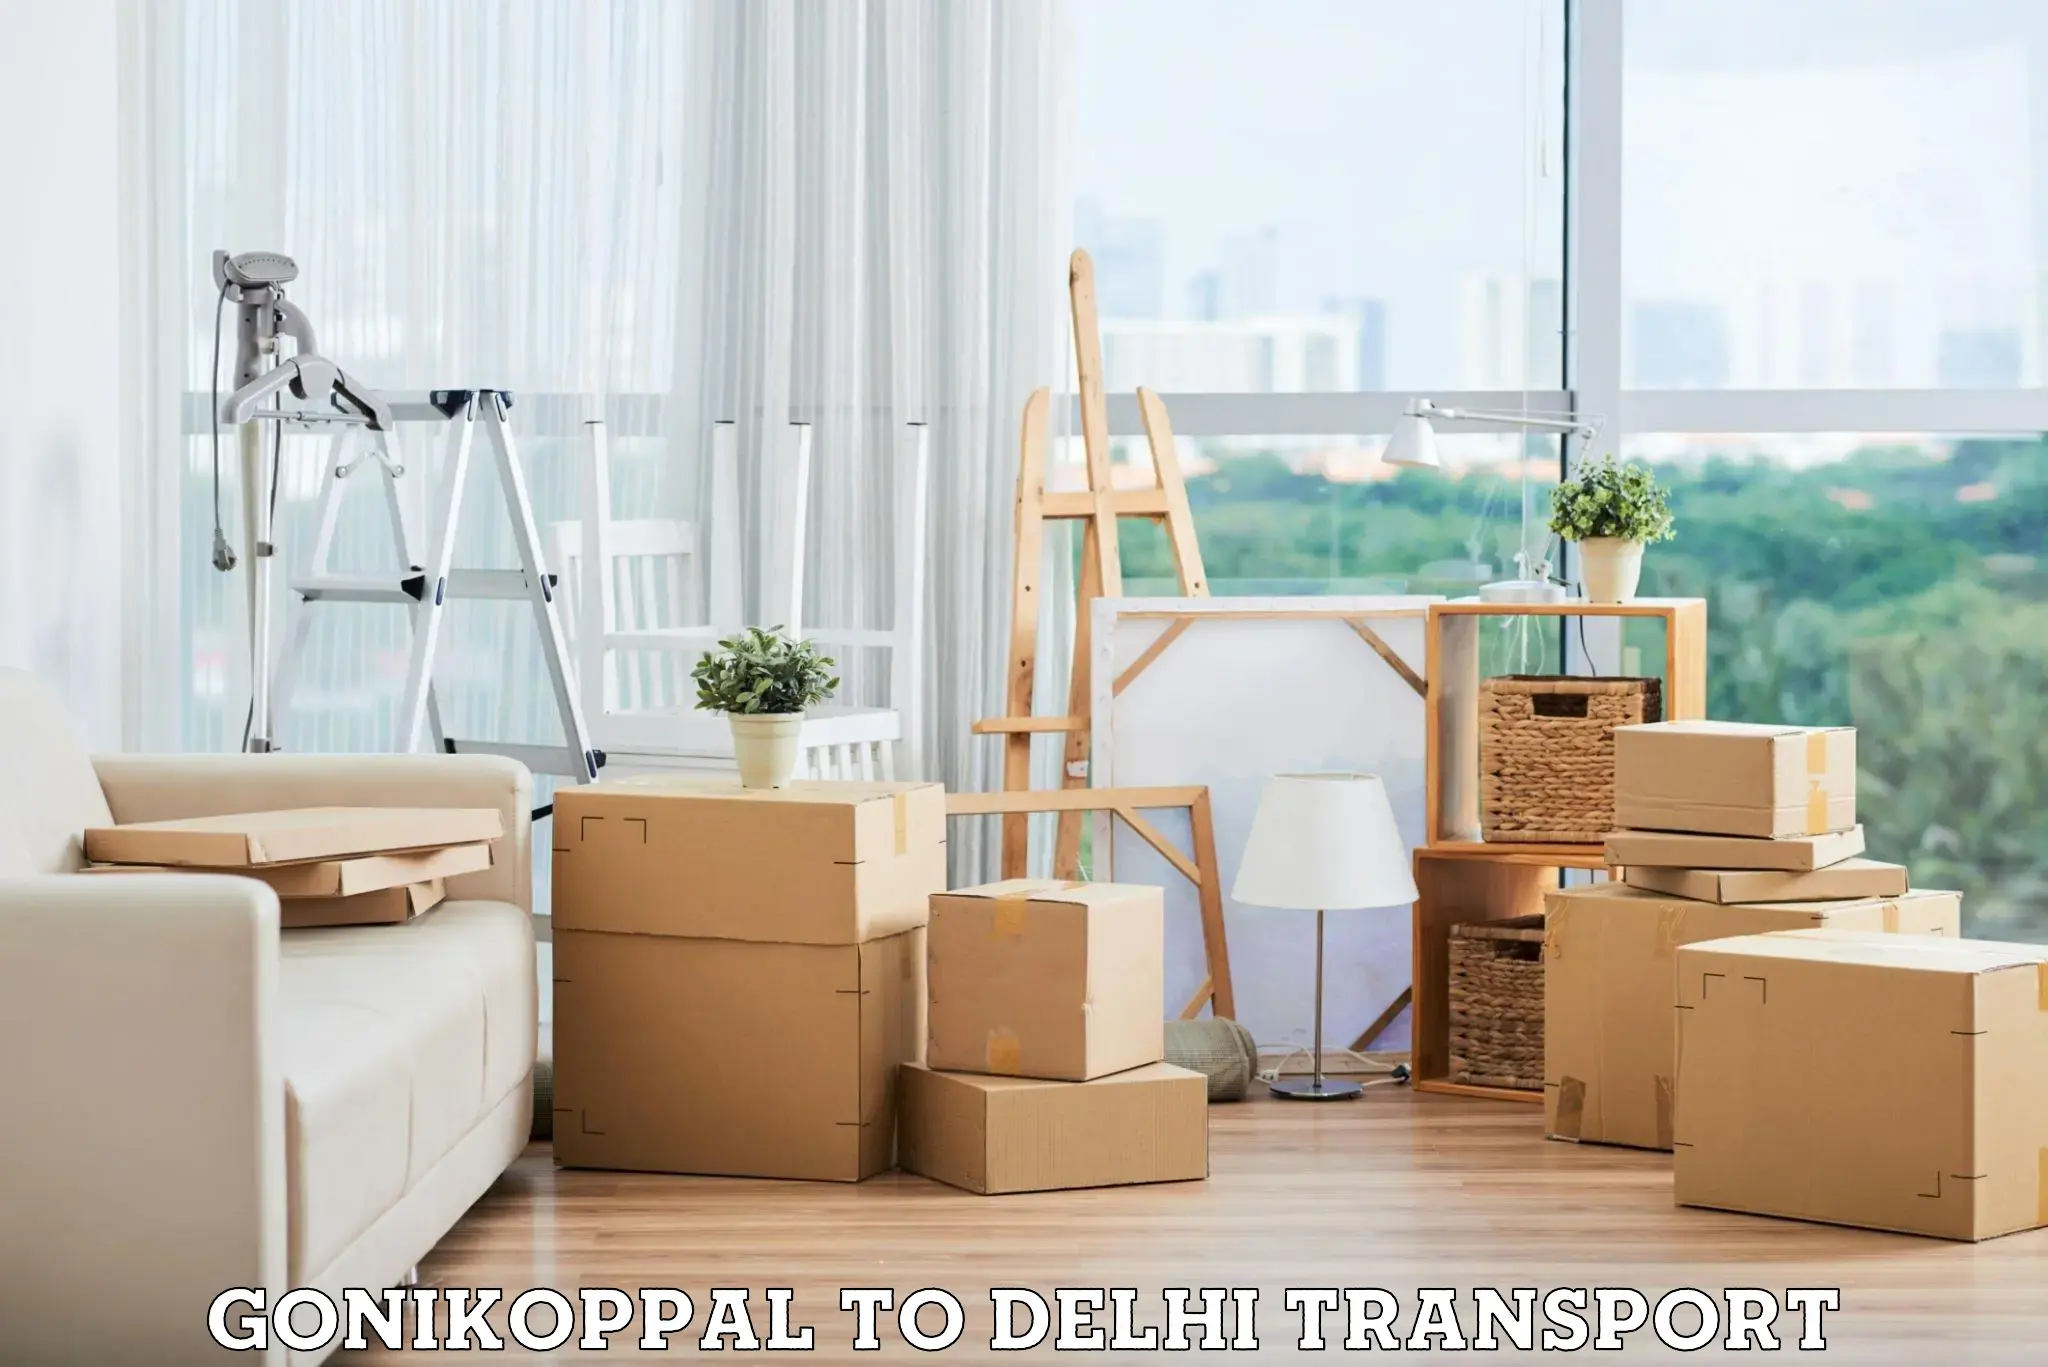 Road transport online services Gonikoppal to Jamia Millia Islamia New Delhi